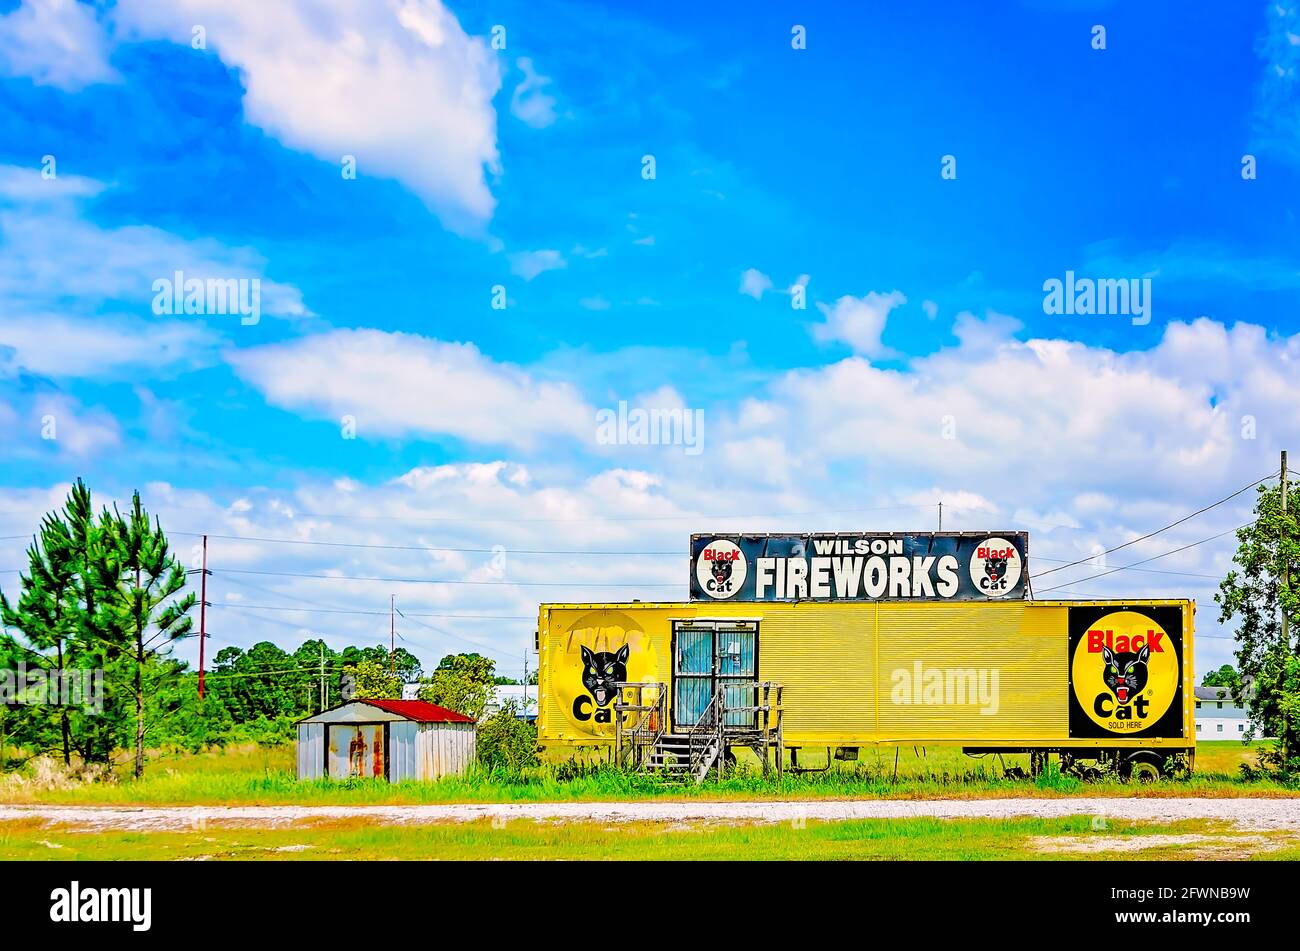 Wilson Fireworks liegt verlassen auf einem Feld in Pascagoula, Mississippi. Feuerwerkskörper am Straßenrand sind ein beliebter Anblick im amerikanischen Süden. Stockfoto